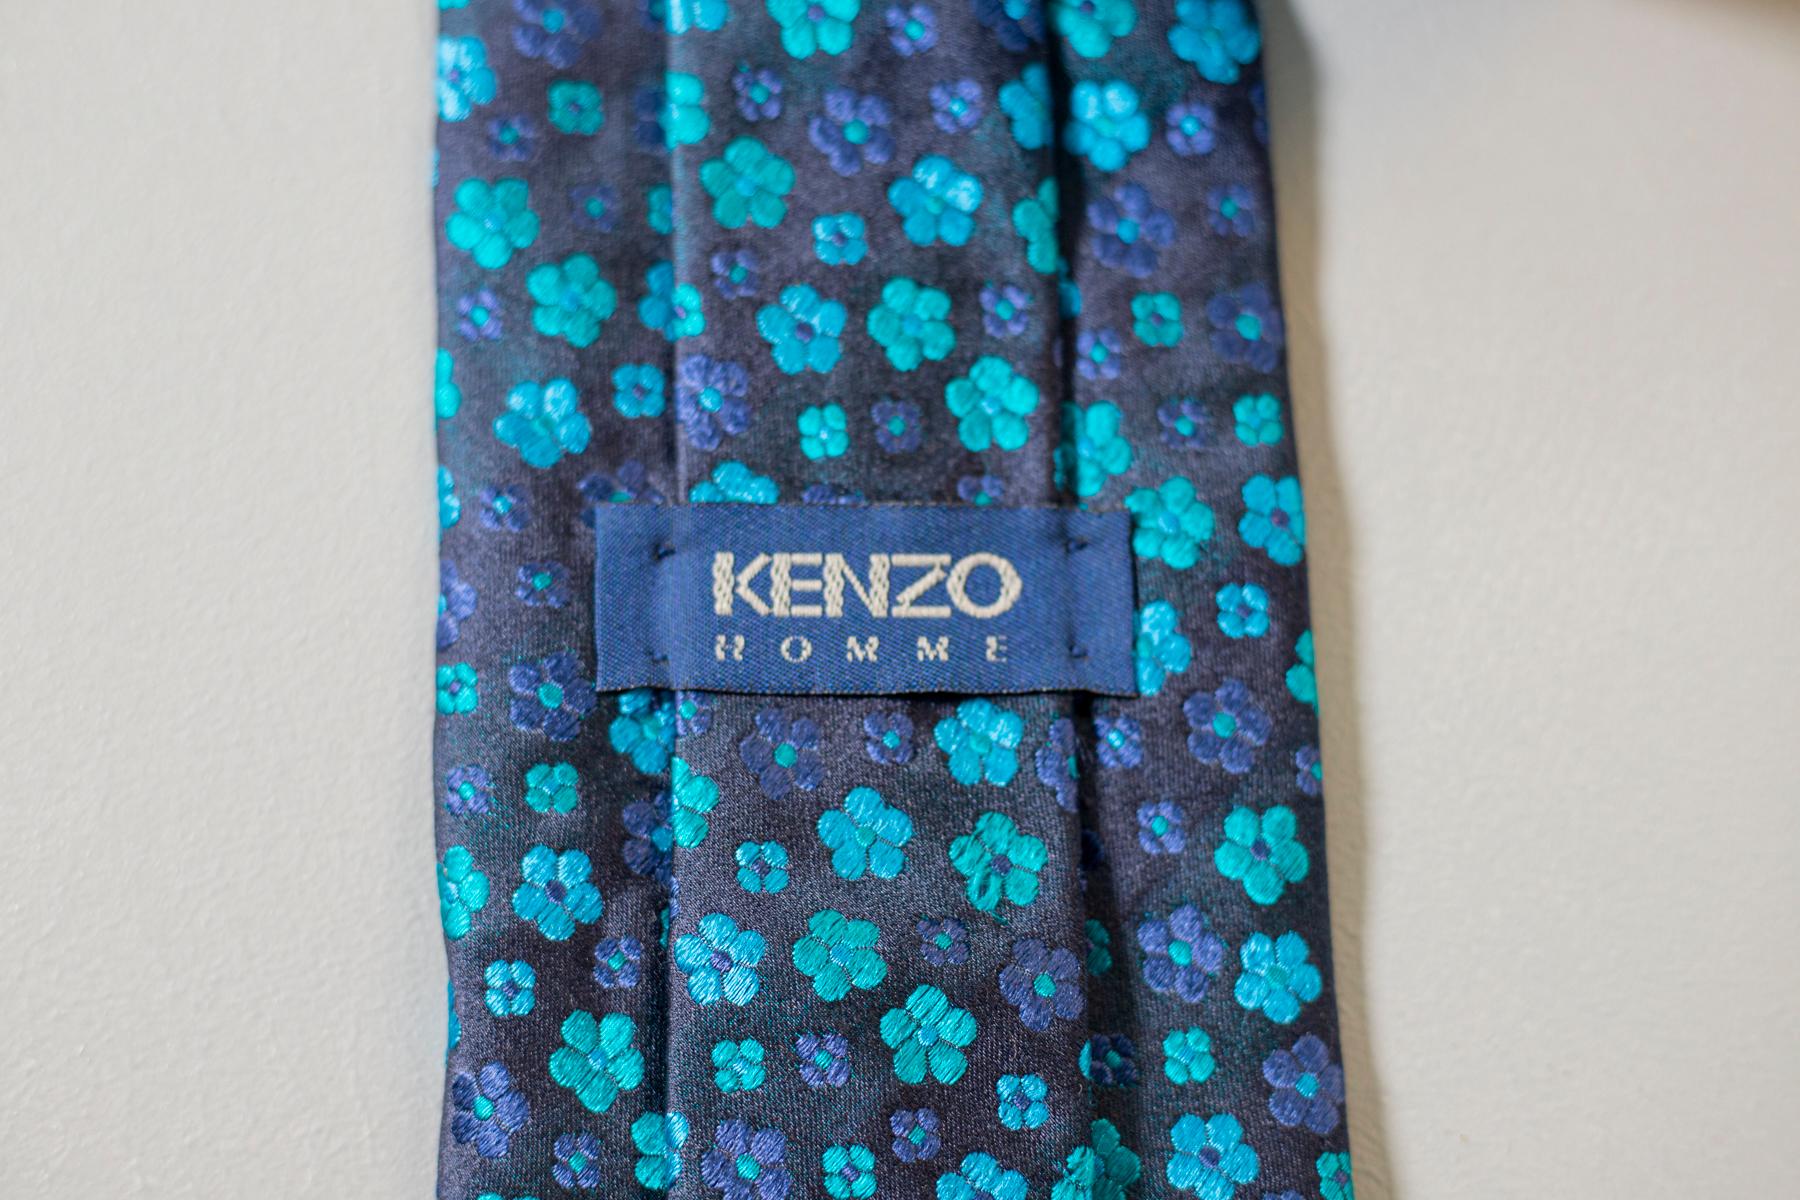 Cette cravate vintage est dans le style classique de Kenzo. Réalisée en toute soie pour la collection Kenzo Homme, cette cravate est décorée de petites fleurs bleues et bleues claires sur un fond bleu foncé. Cet accessoire est parfait pour un